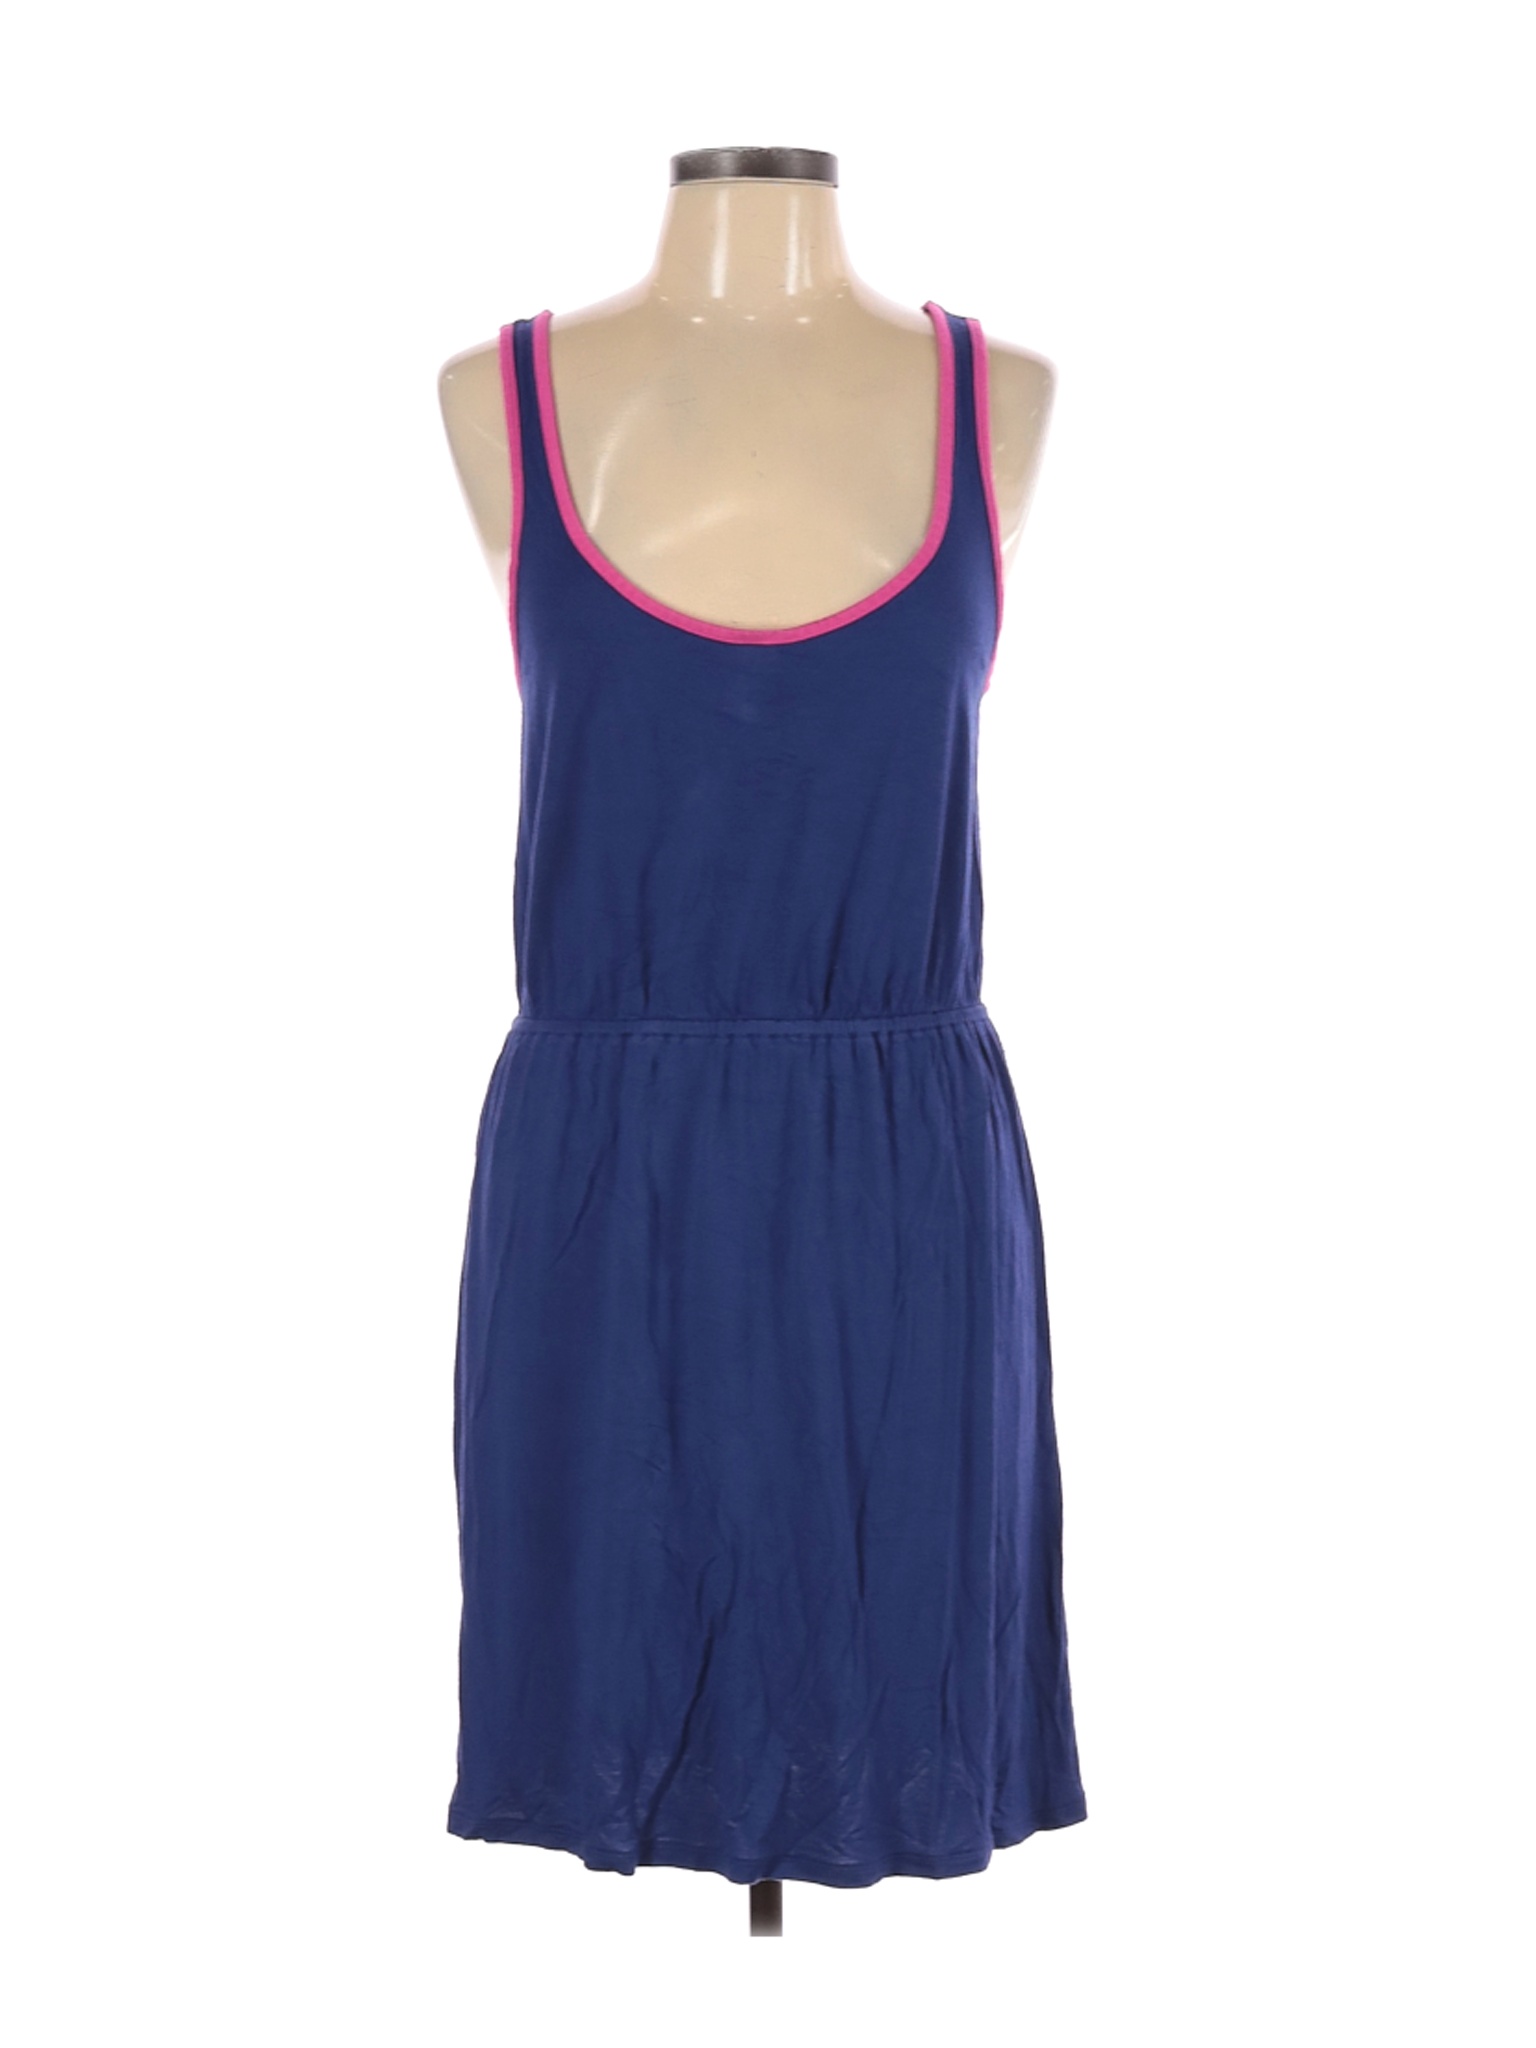 Old Navy Women Blue Casual Dress L | eBay